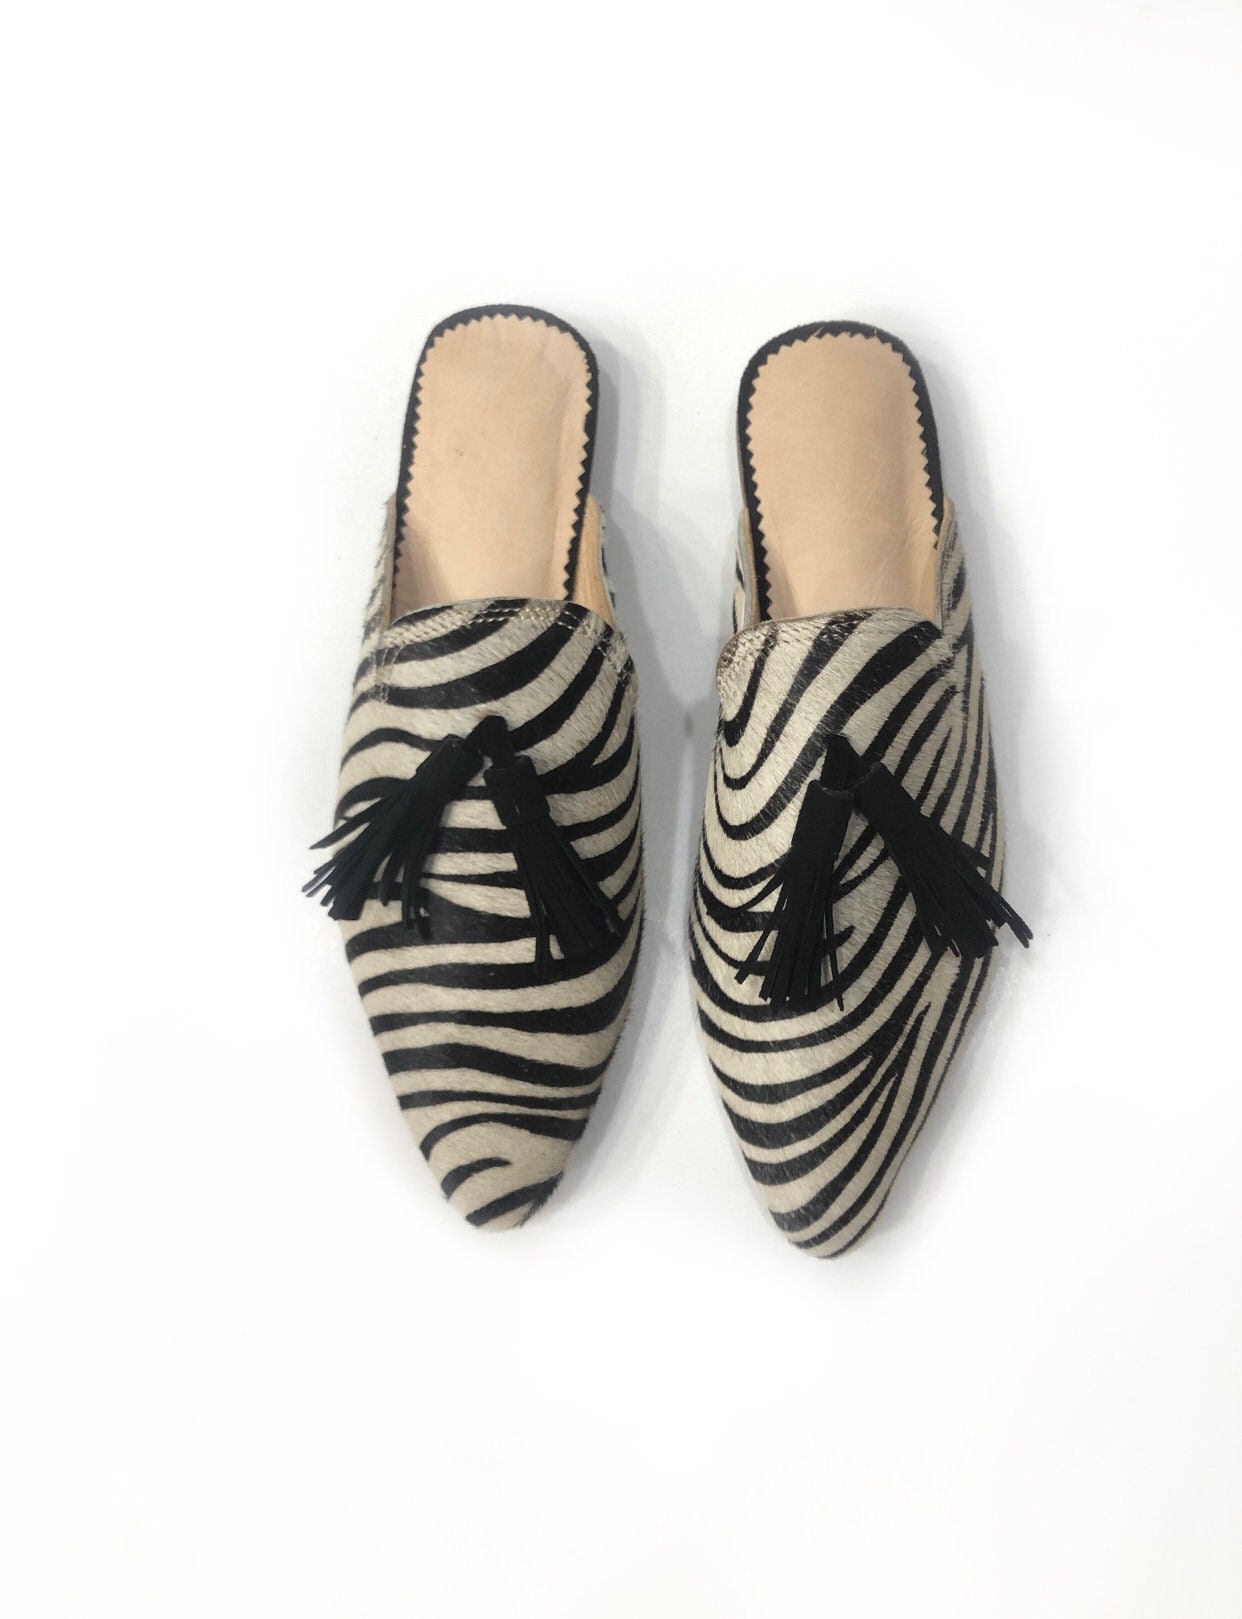 Modern Zebra Slippers for Women Leather Slipper Handmade Zebre - Etsy